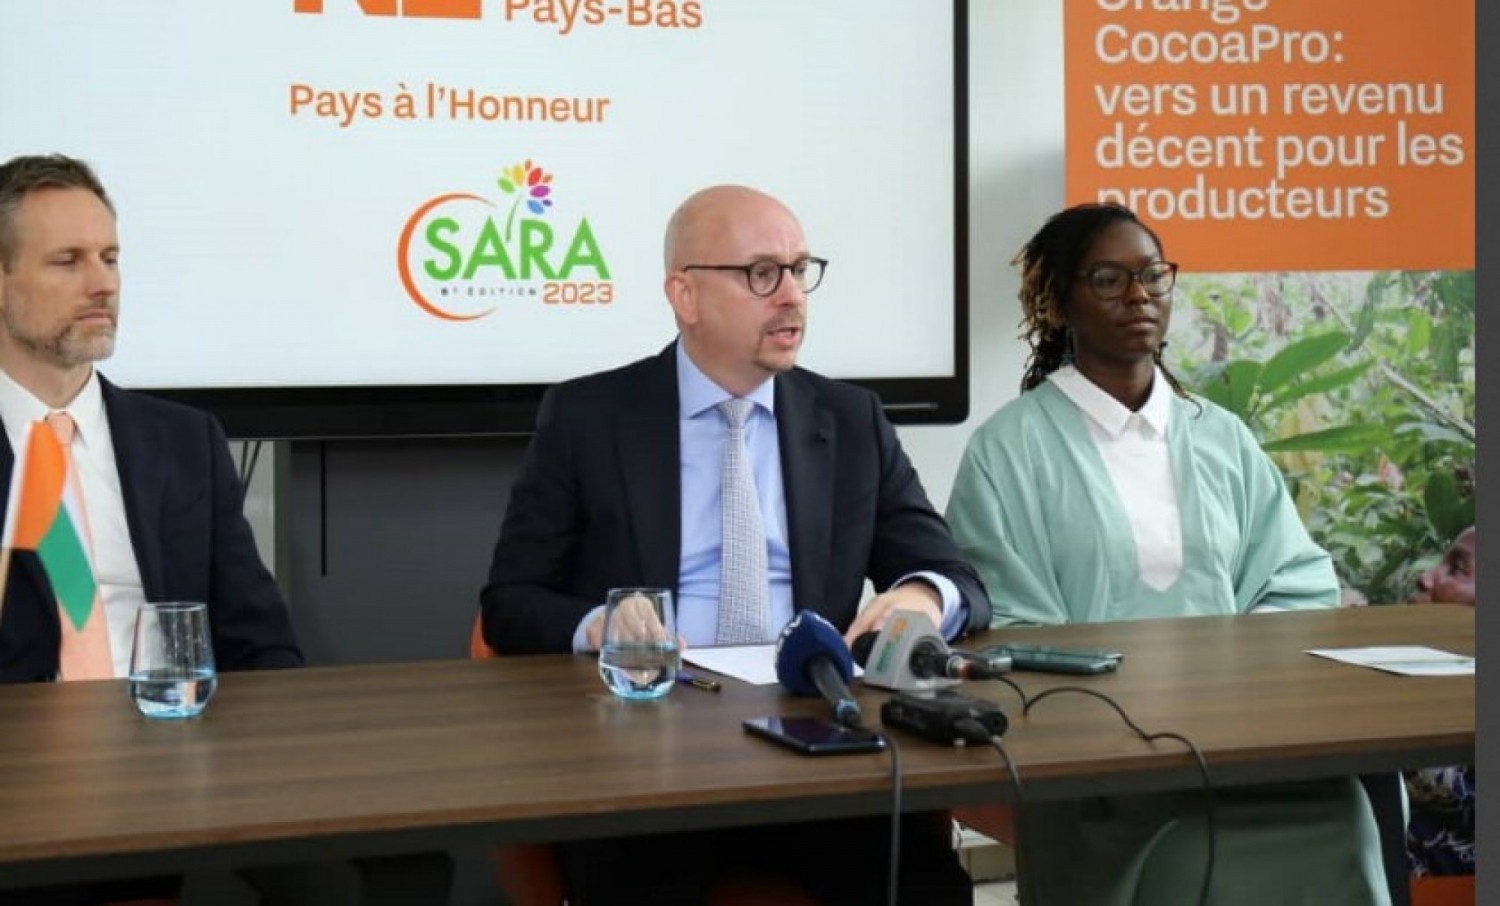 Côte d'Ivoire-Pays-Bas : SARA 2023, 120 entreprises et organisations hollandaises attendues, les précisions de l'ambassadeur Kelderhuis